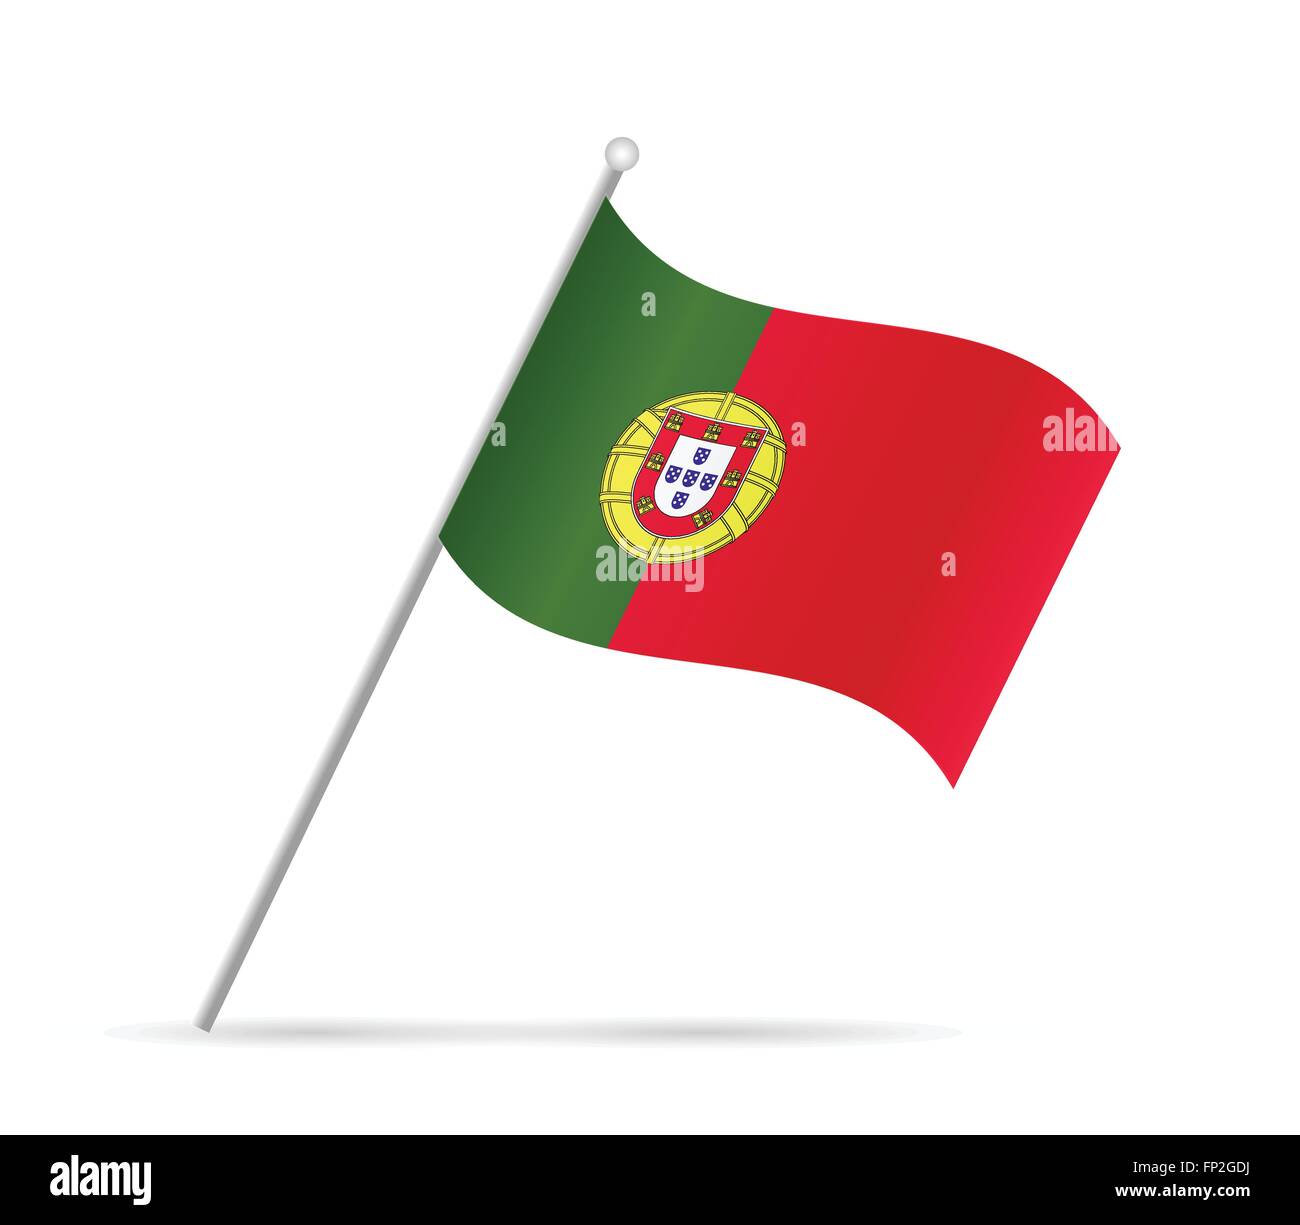 Illustrazione di un flag dal Portogallo isolato su uno sfondo bianco. Illustrazione Vettoriale